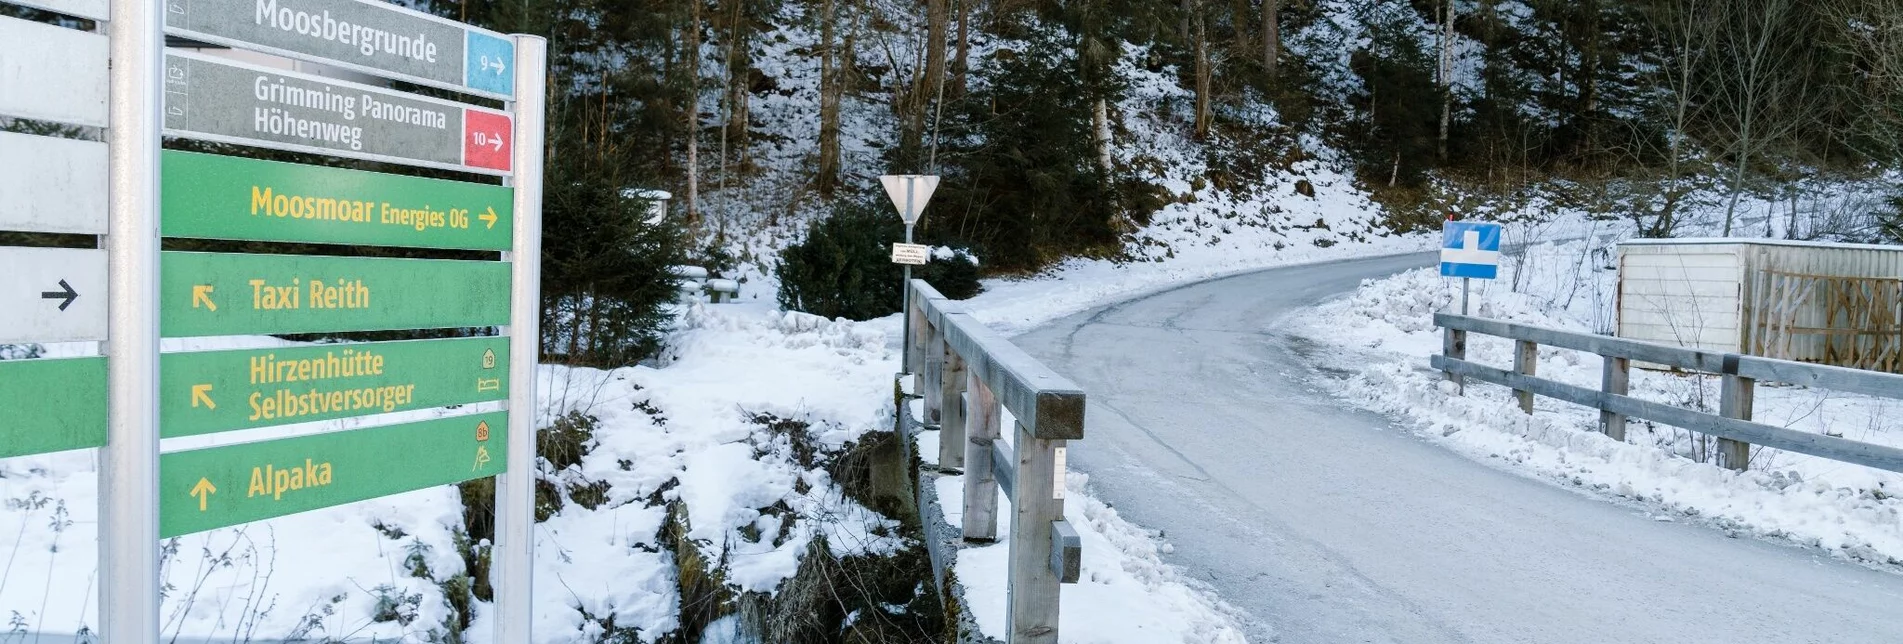 Winter Hiking Winterwandern - Moosberg Runde - Touren-Impression #1 | © Erlebnisregion Schladming-Dachstein